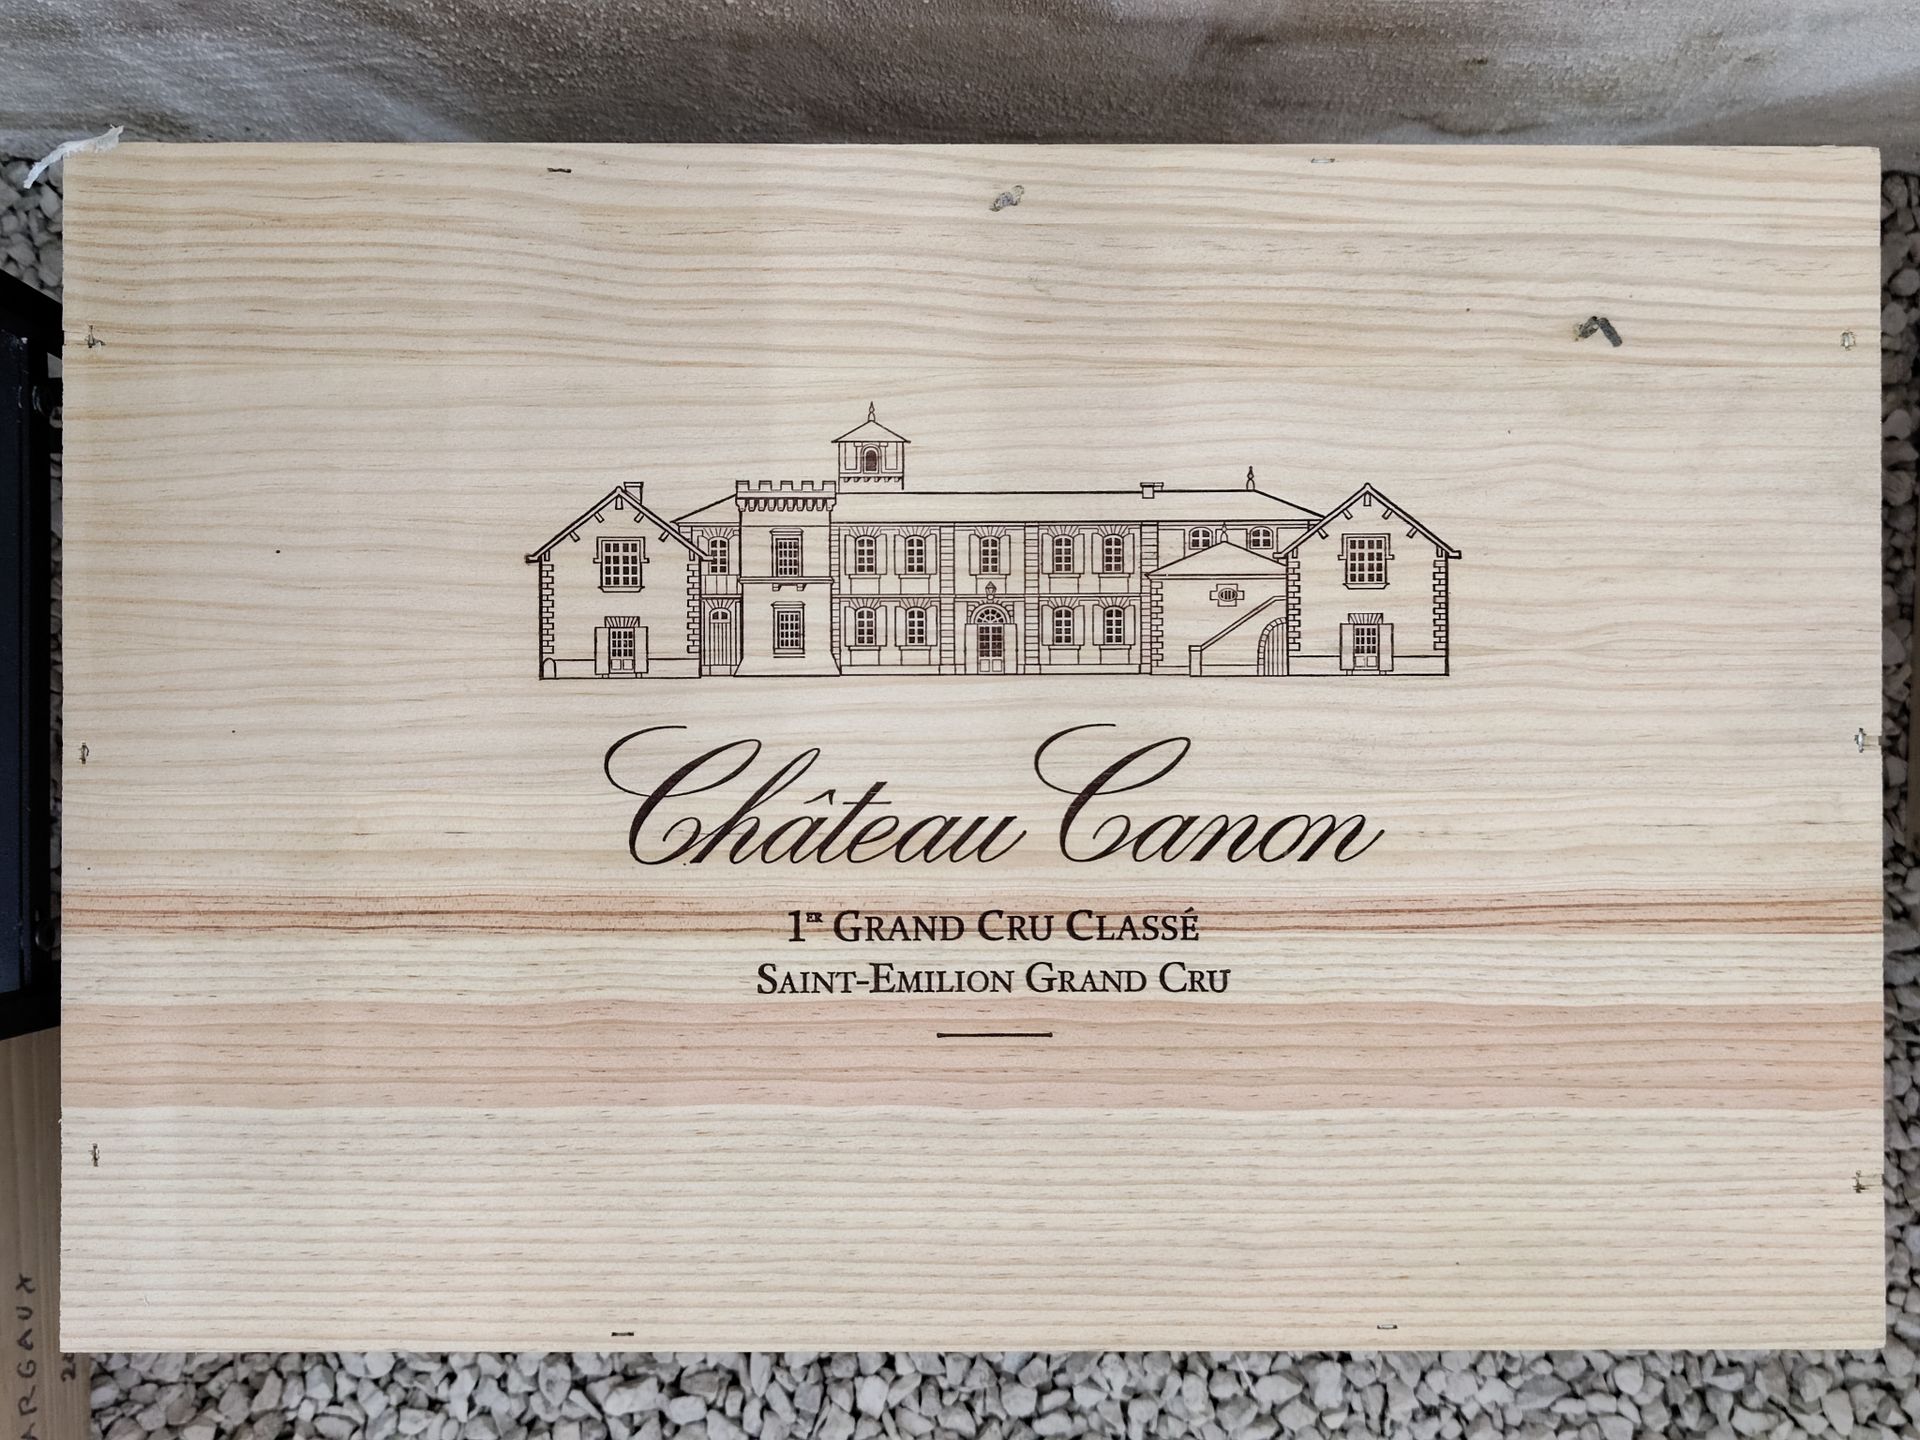 Null 12瓶CHÂTEAU CANON, 1er grand clu classé, Saint-Emilion Bordeaux.
未开箱。